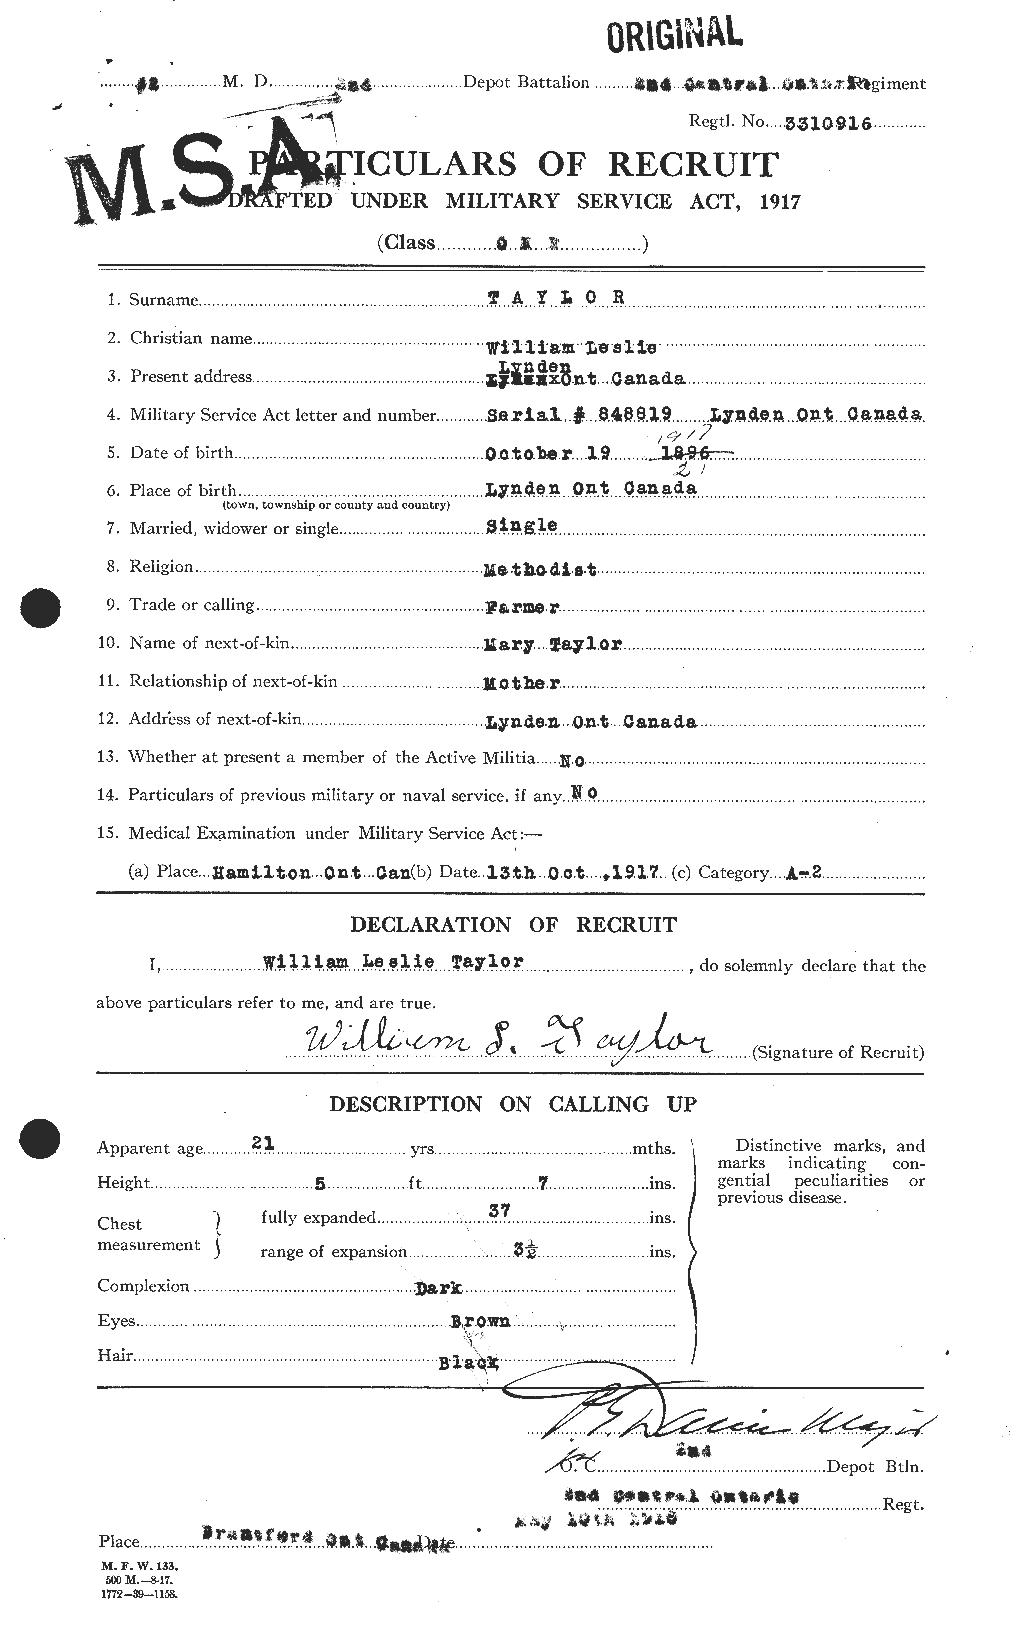 Dossiers du Personnel de la Première Guerre mondiale - CEC 628322a